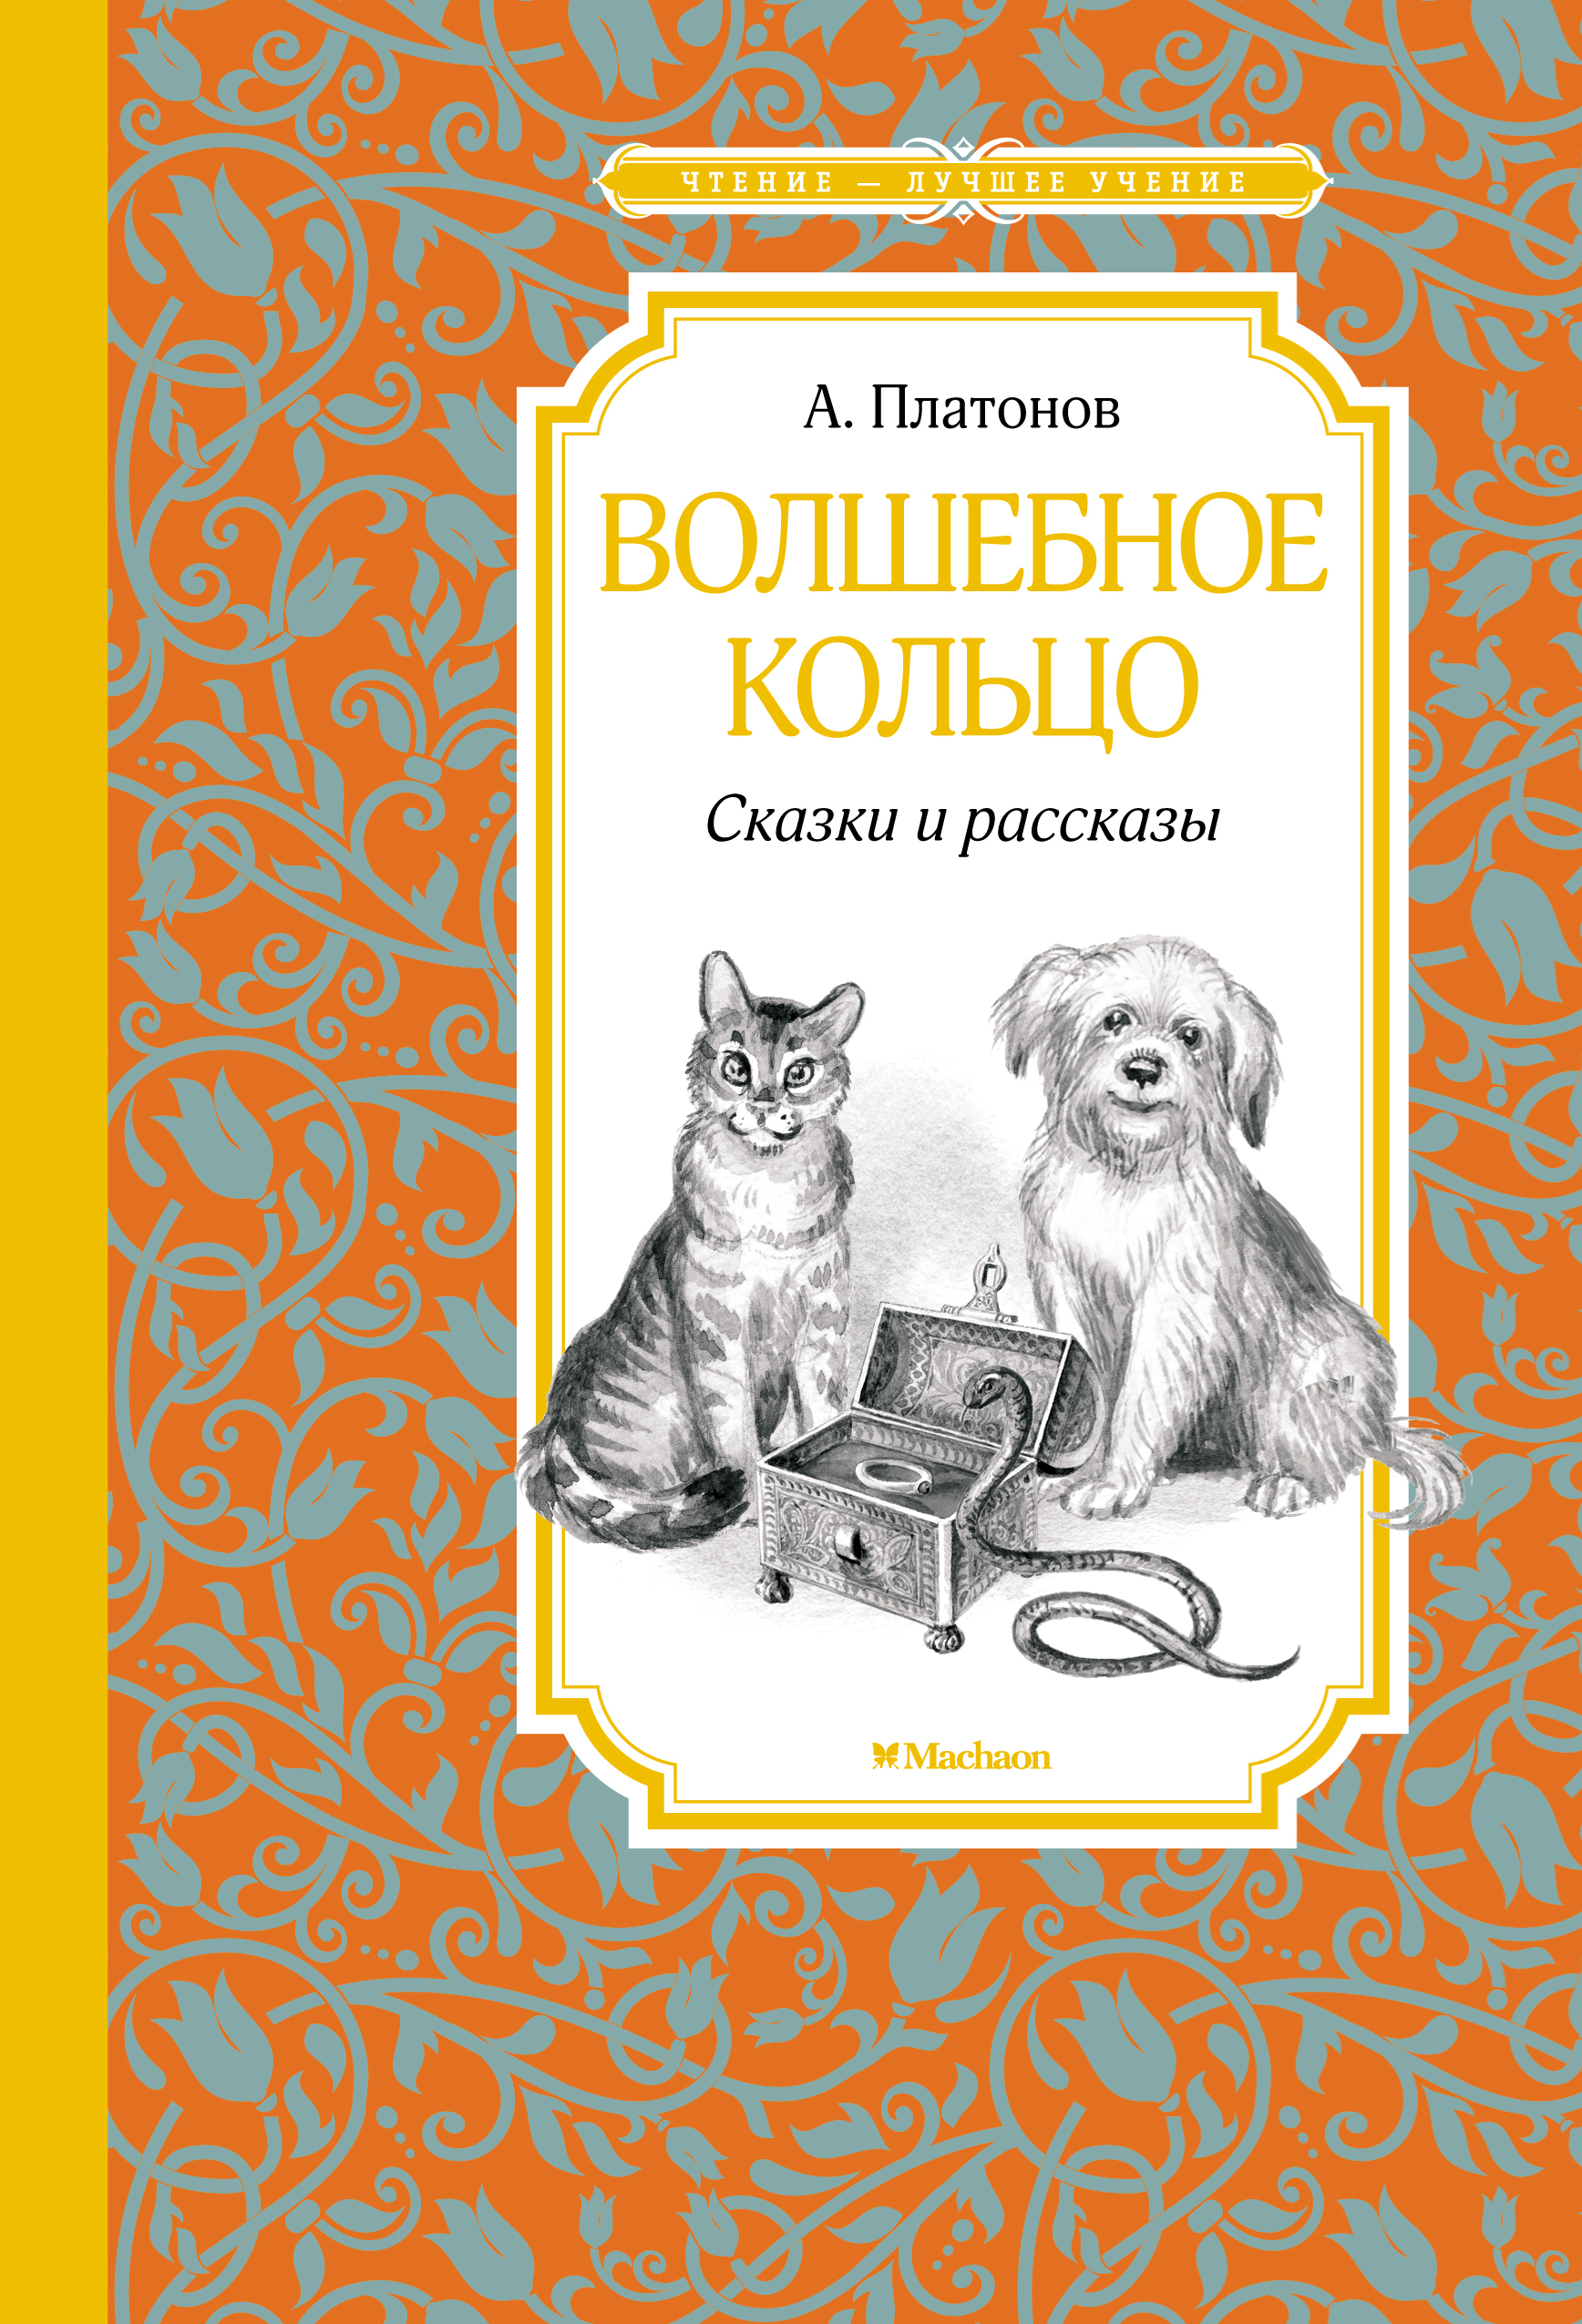 Платонов Андрей Платонович - Волшебное кольцо: сказки и рассказы